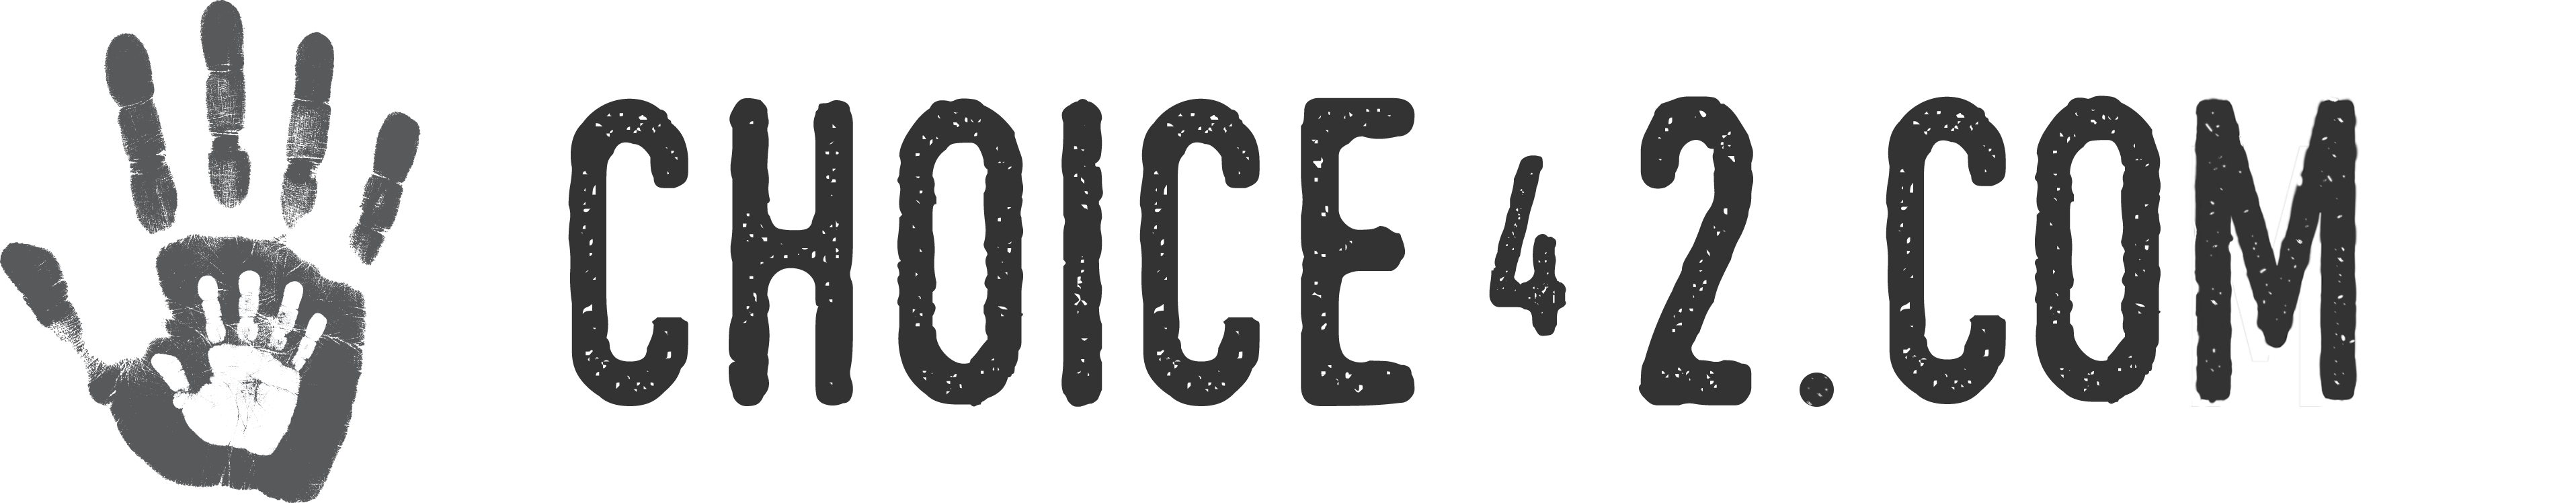 CHOICE42 logo